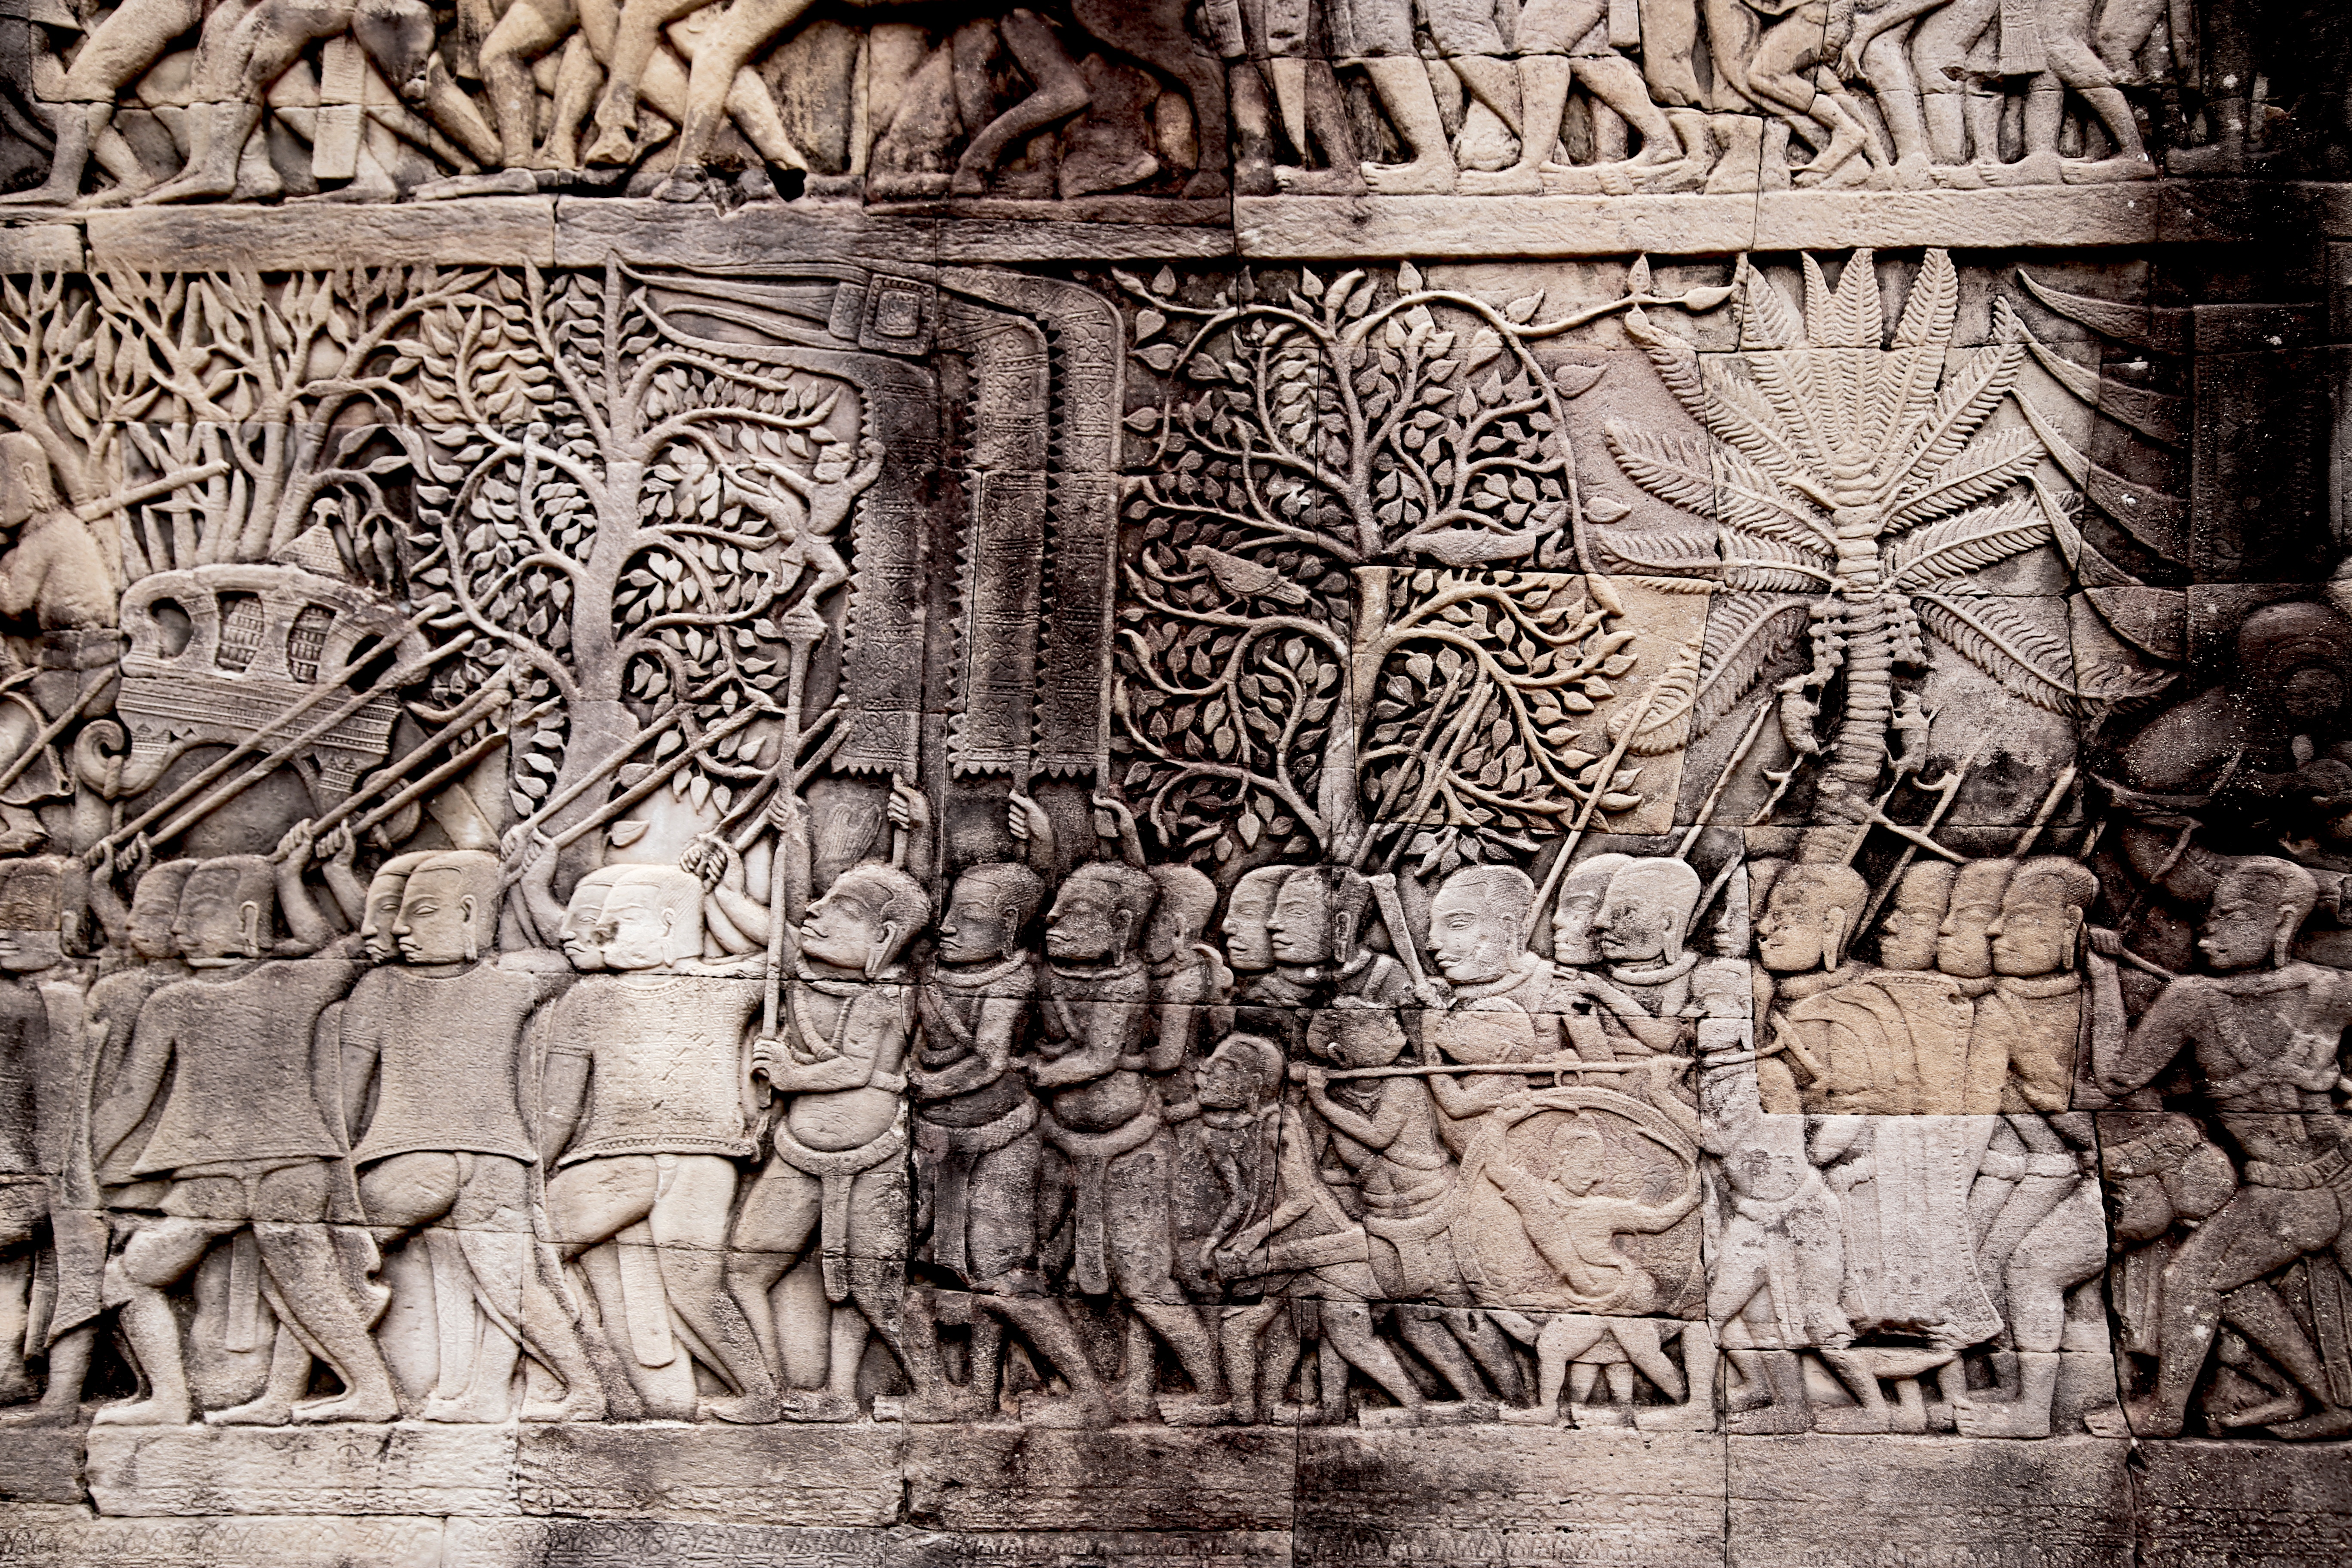 Angkor - ornate wall